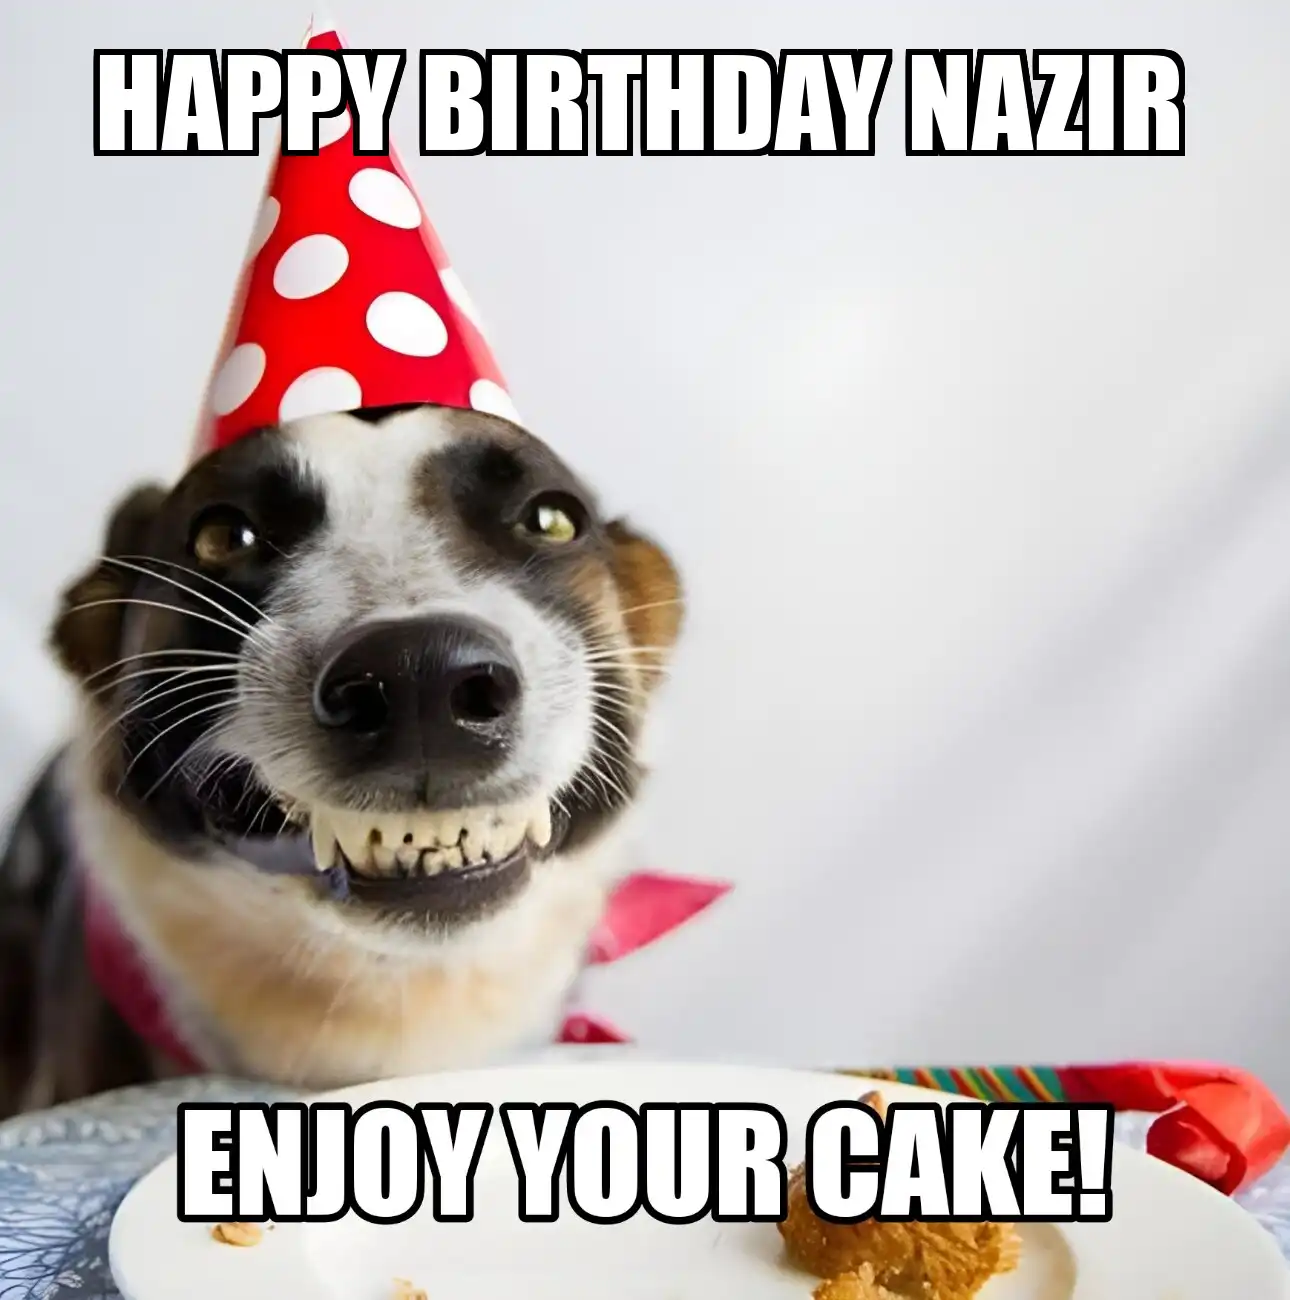 Happy Birthday Nazir Enjoy Your Cake Dog Meme